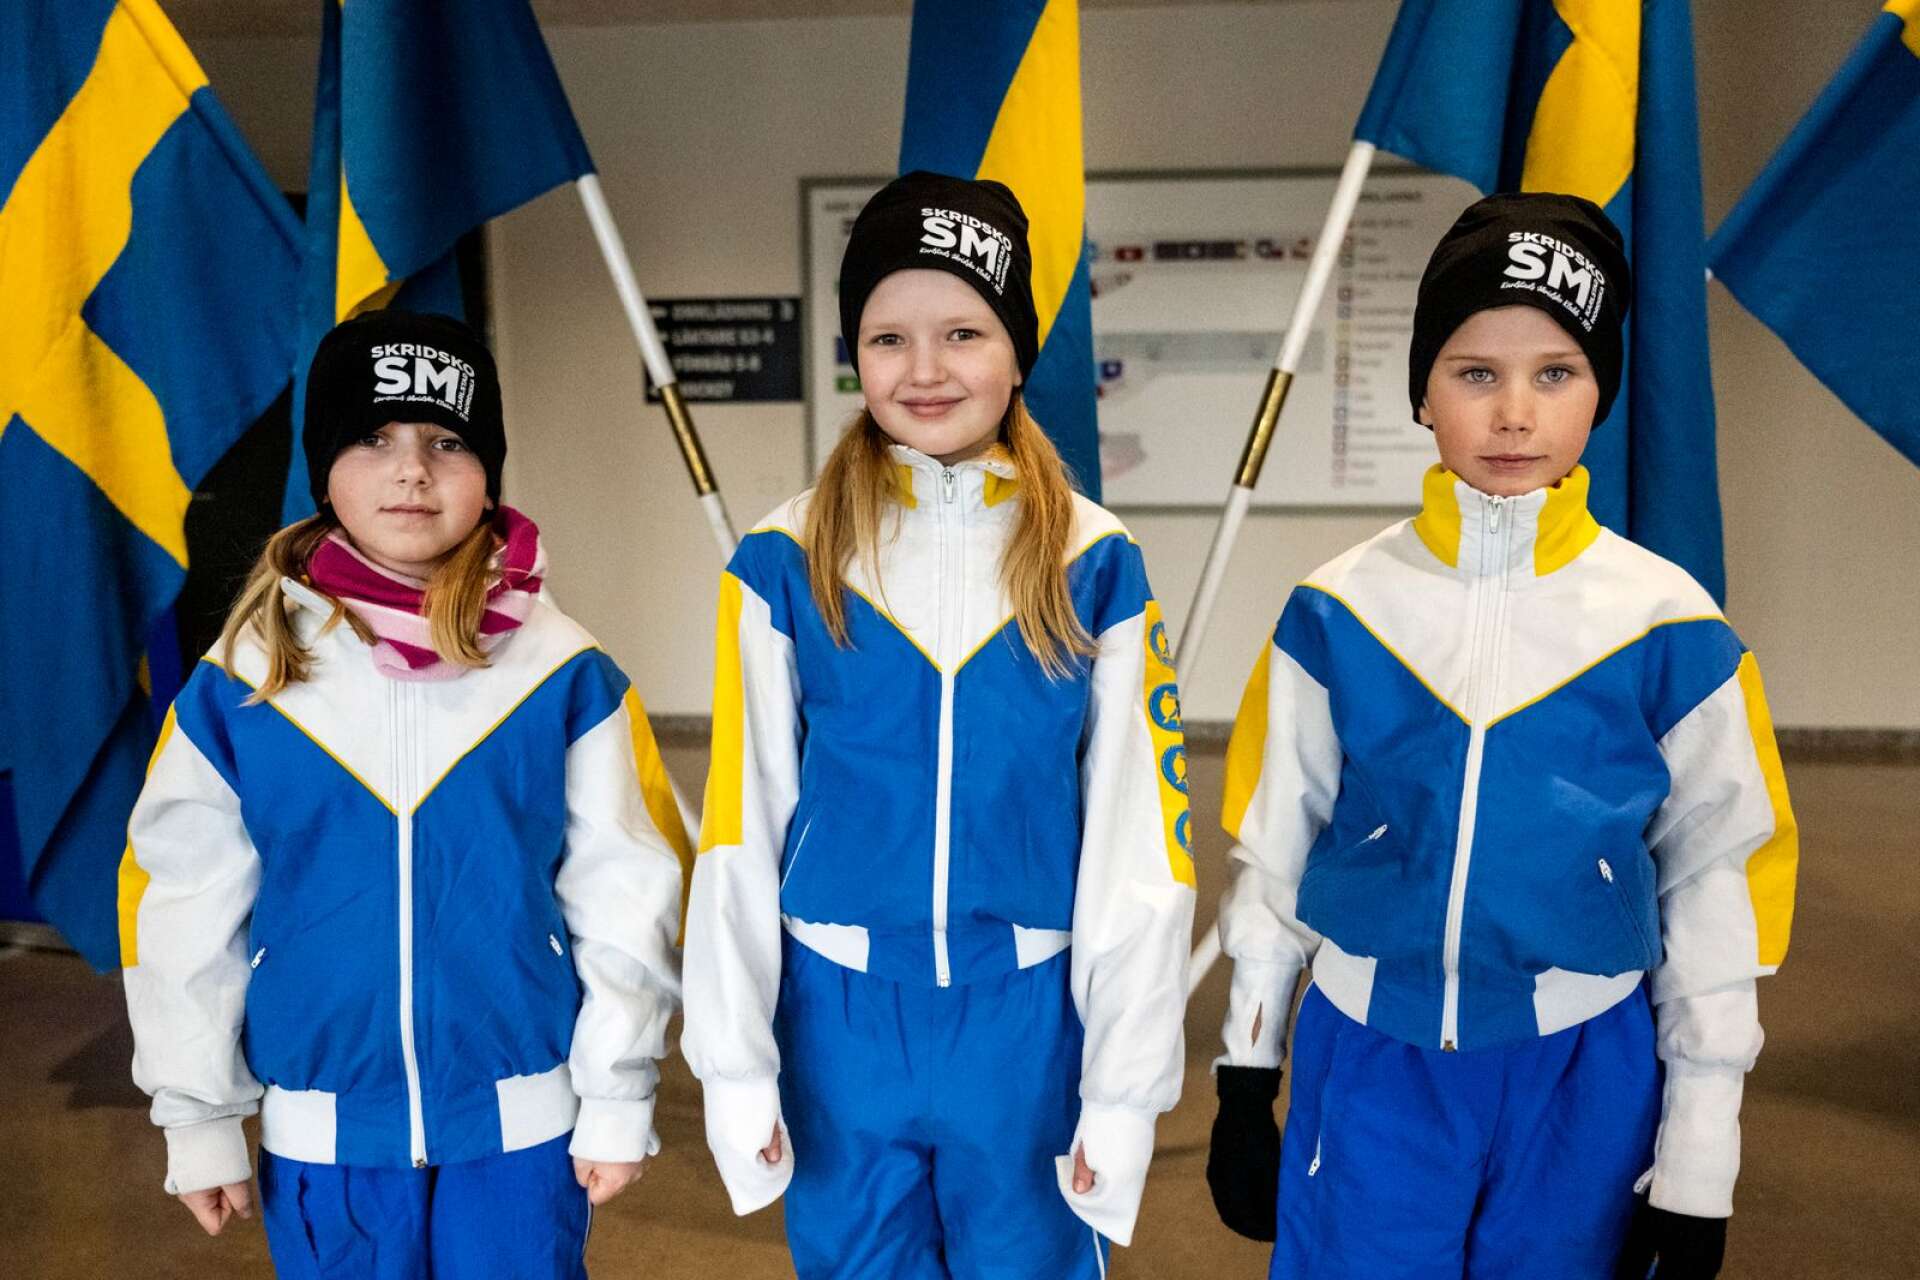 Karlstad Skridskoklubbs unga garde fanns på plats. Här ses Inez Bengtsson, 8, Liv Ryan Edgren, 9, och William Salling, 7.